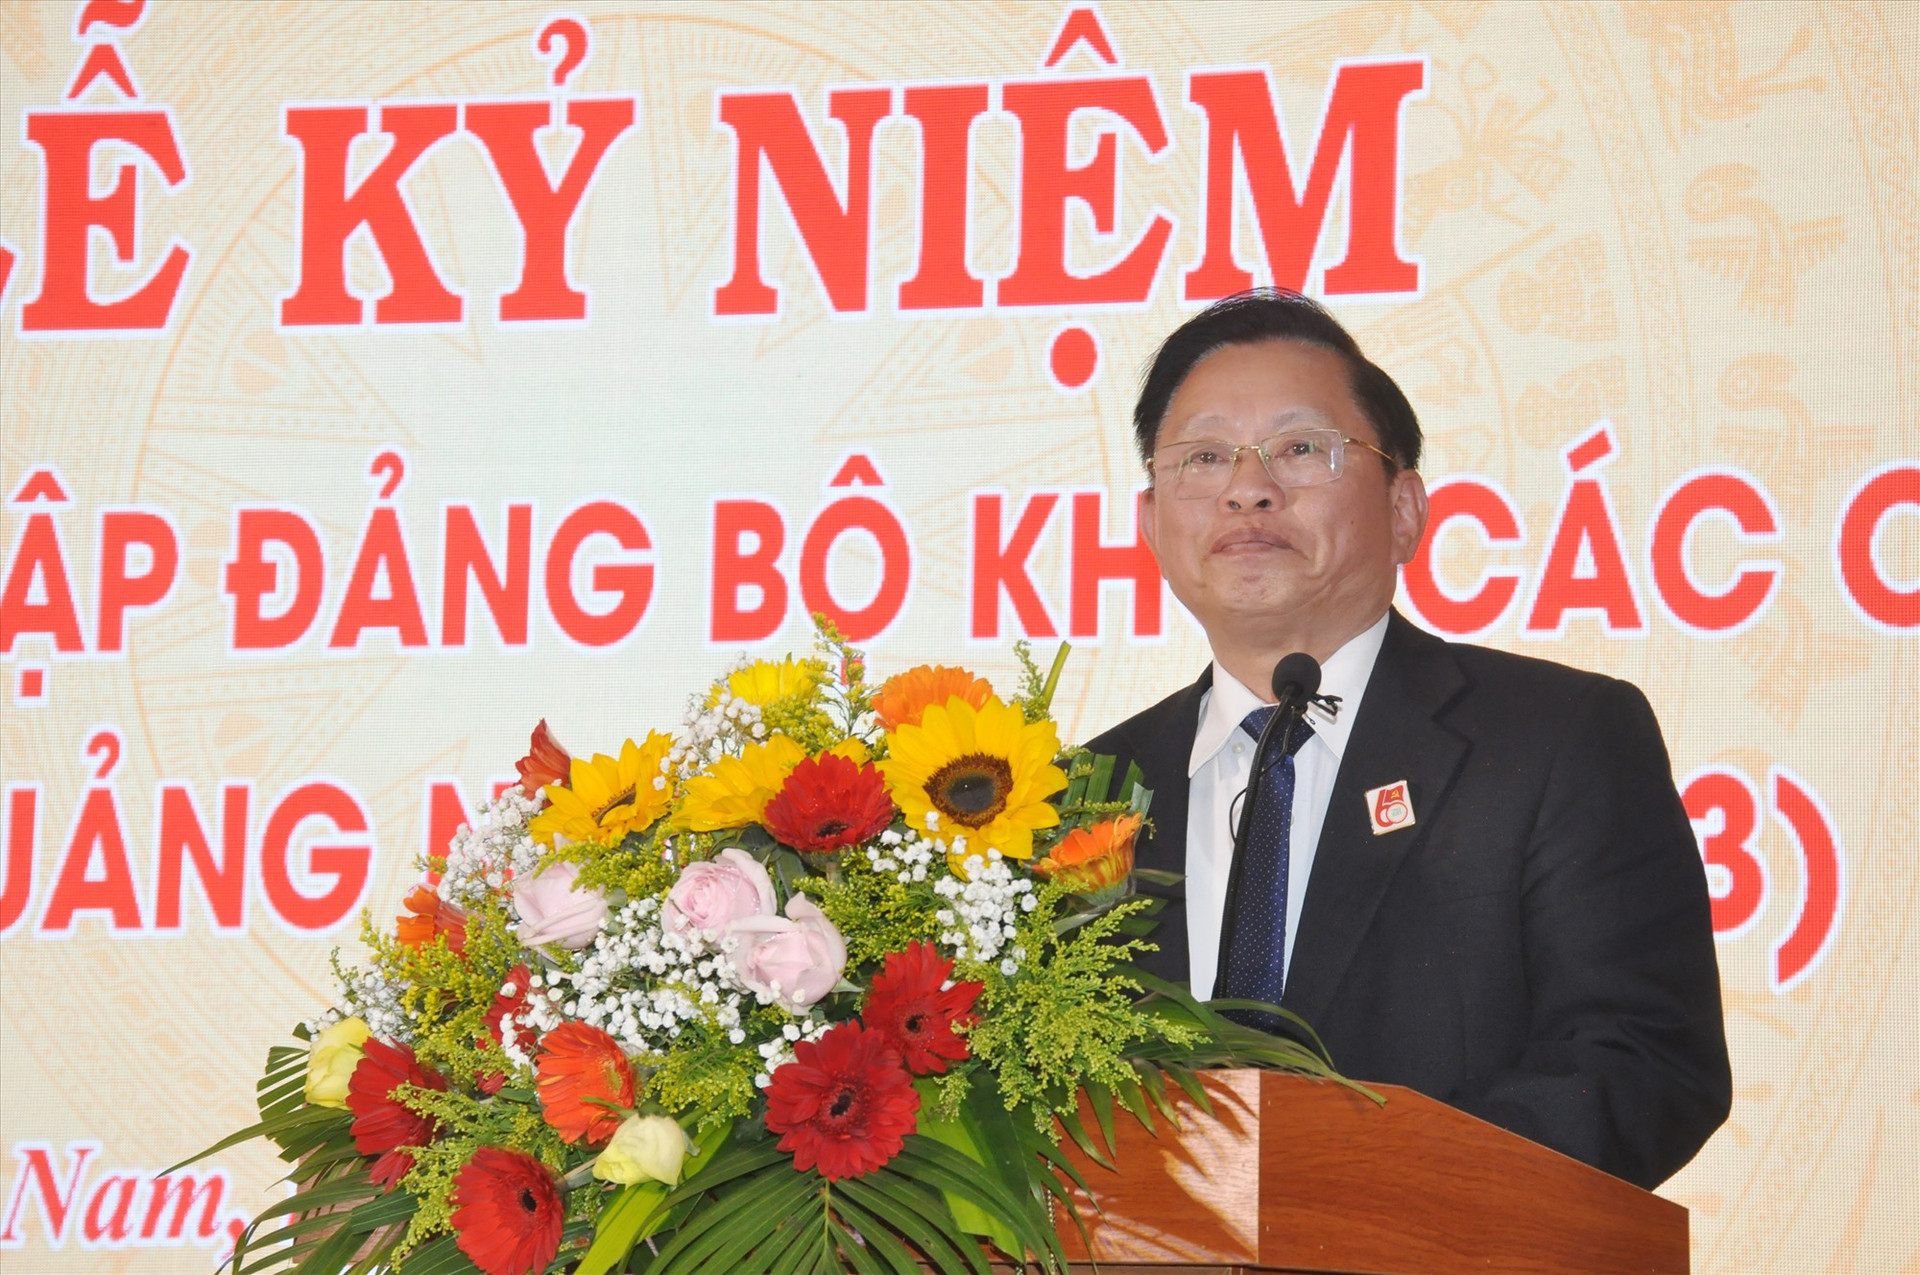 Ông Hồ Thanh Hải - nguyên Bí thư Đảng ủy Khối các cơ quan tỉnh phát biểu tại lễ kỷ niệm. Ảnh: N.Đ